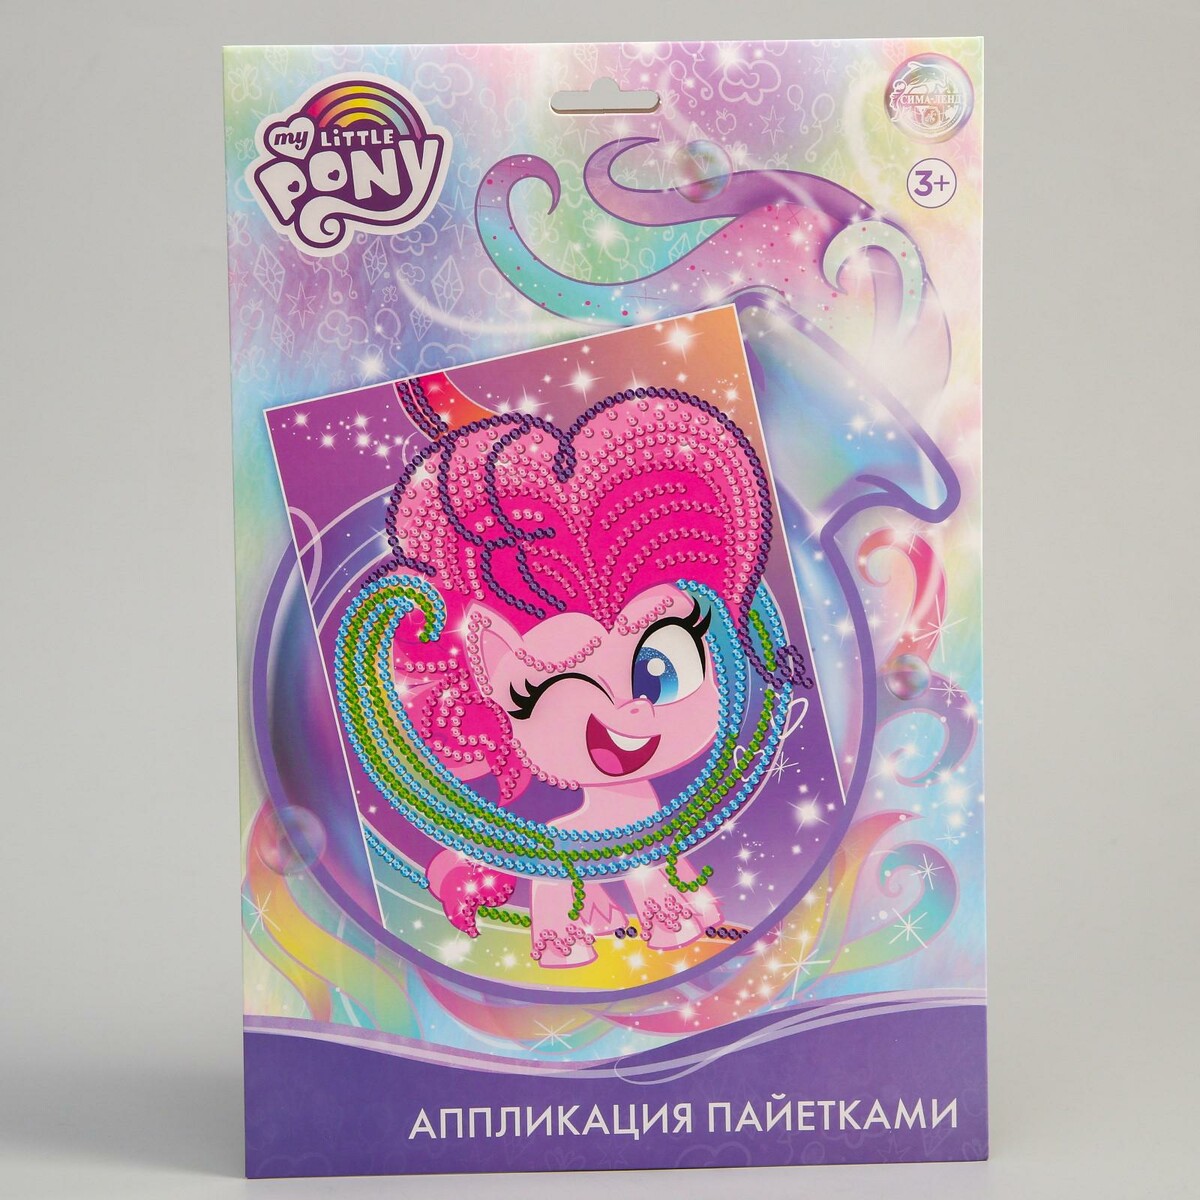 Аппликация пайетками my little pony: пинки пай + 5 цветов пайеток по 7 г, Hasbro